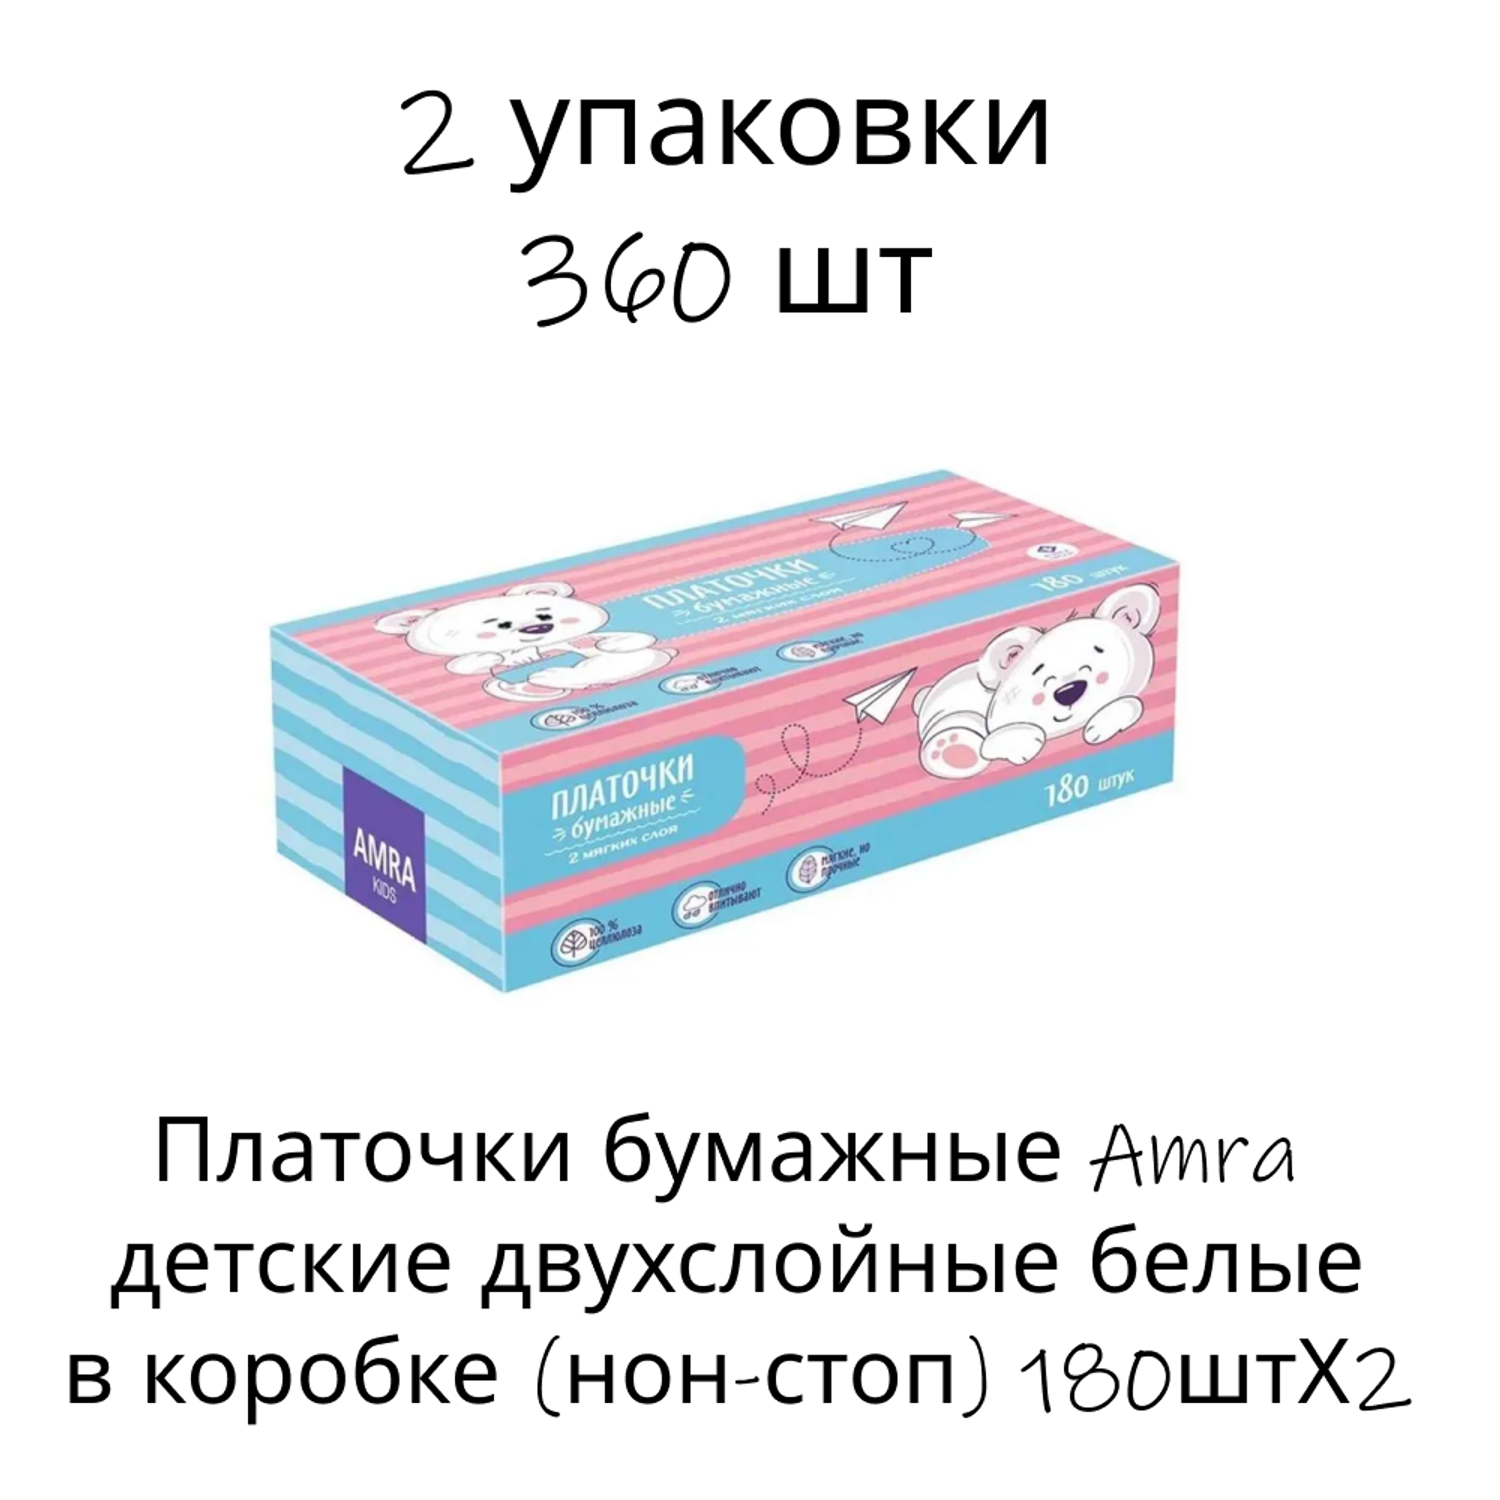 Платочки бумажные Amra детские двухслойные белые в коробке (нон-стоп) 180штХ2 - фото 1